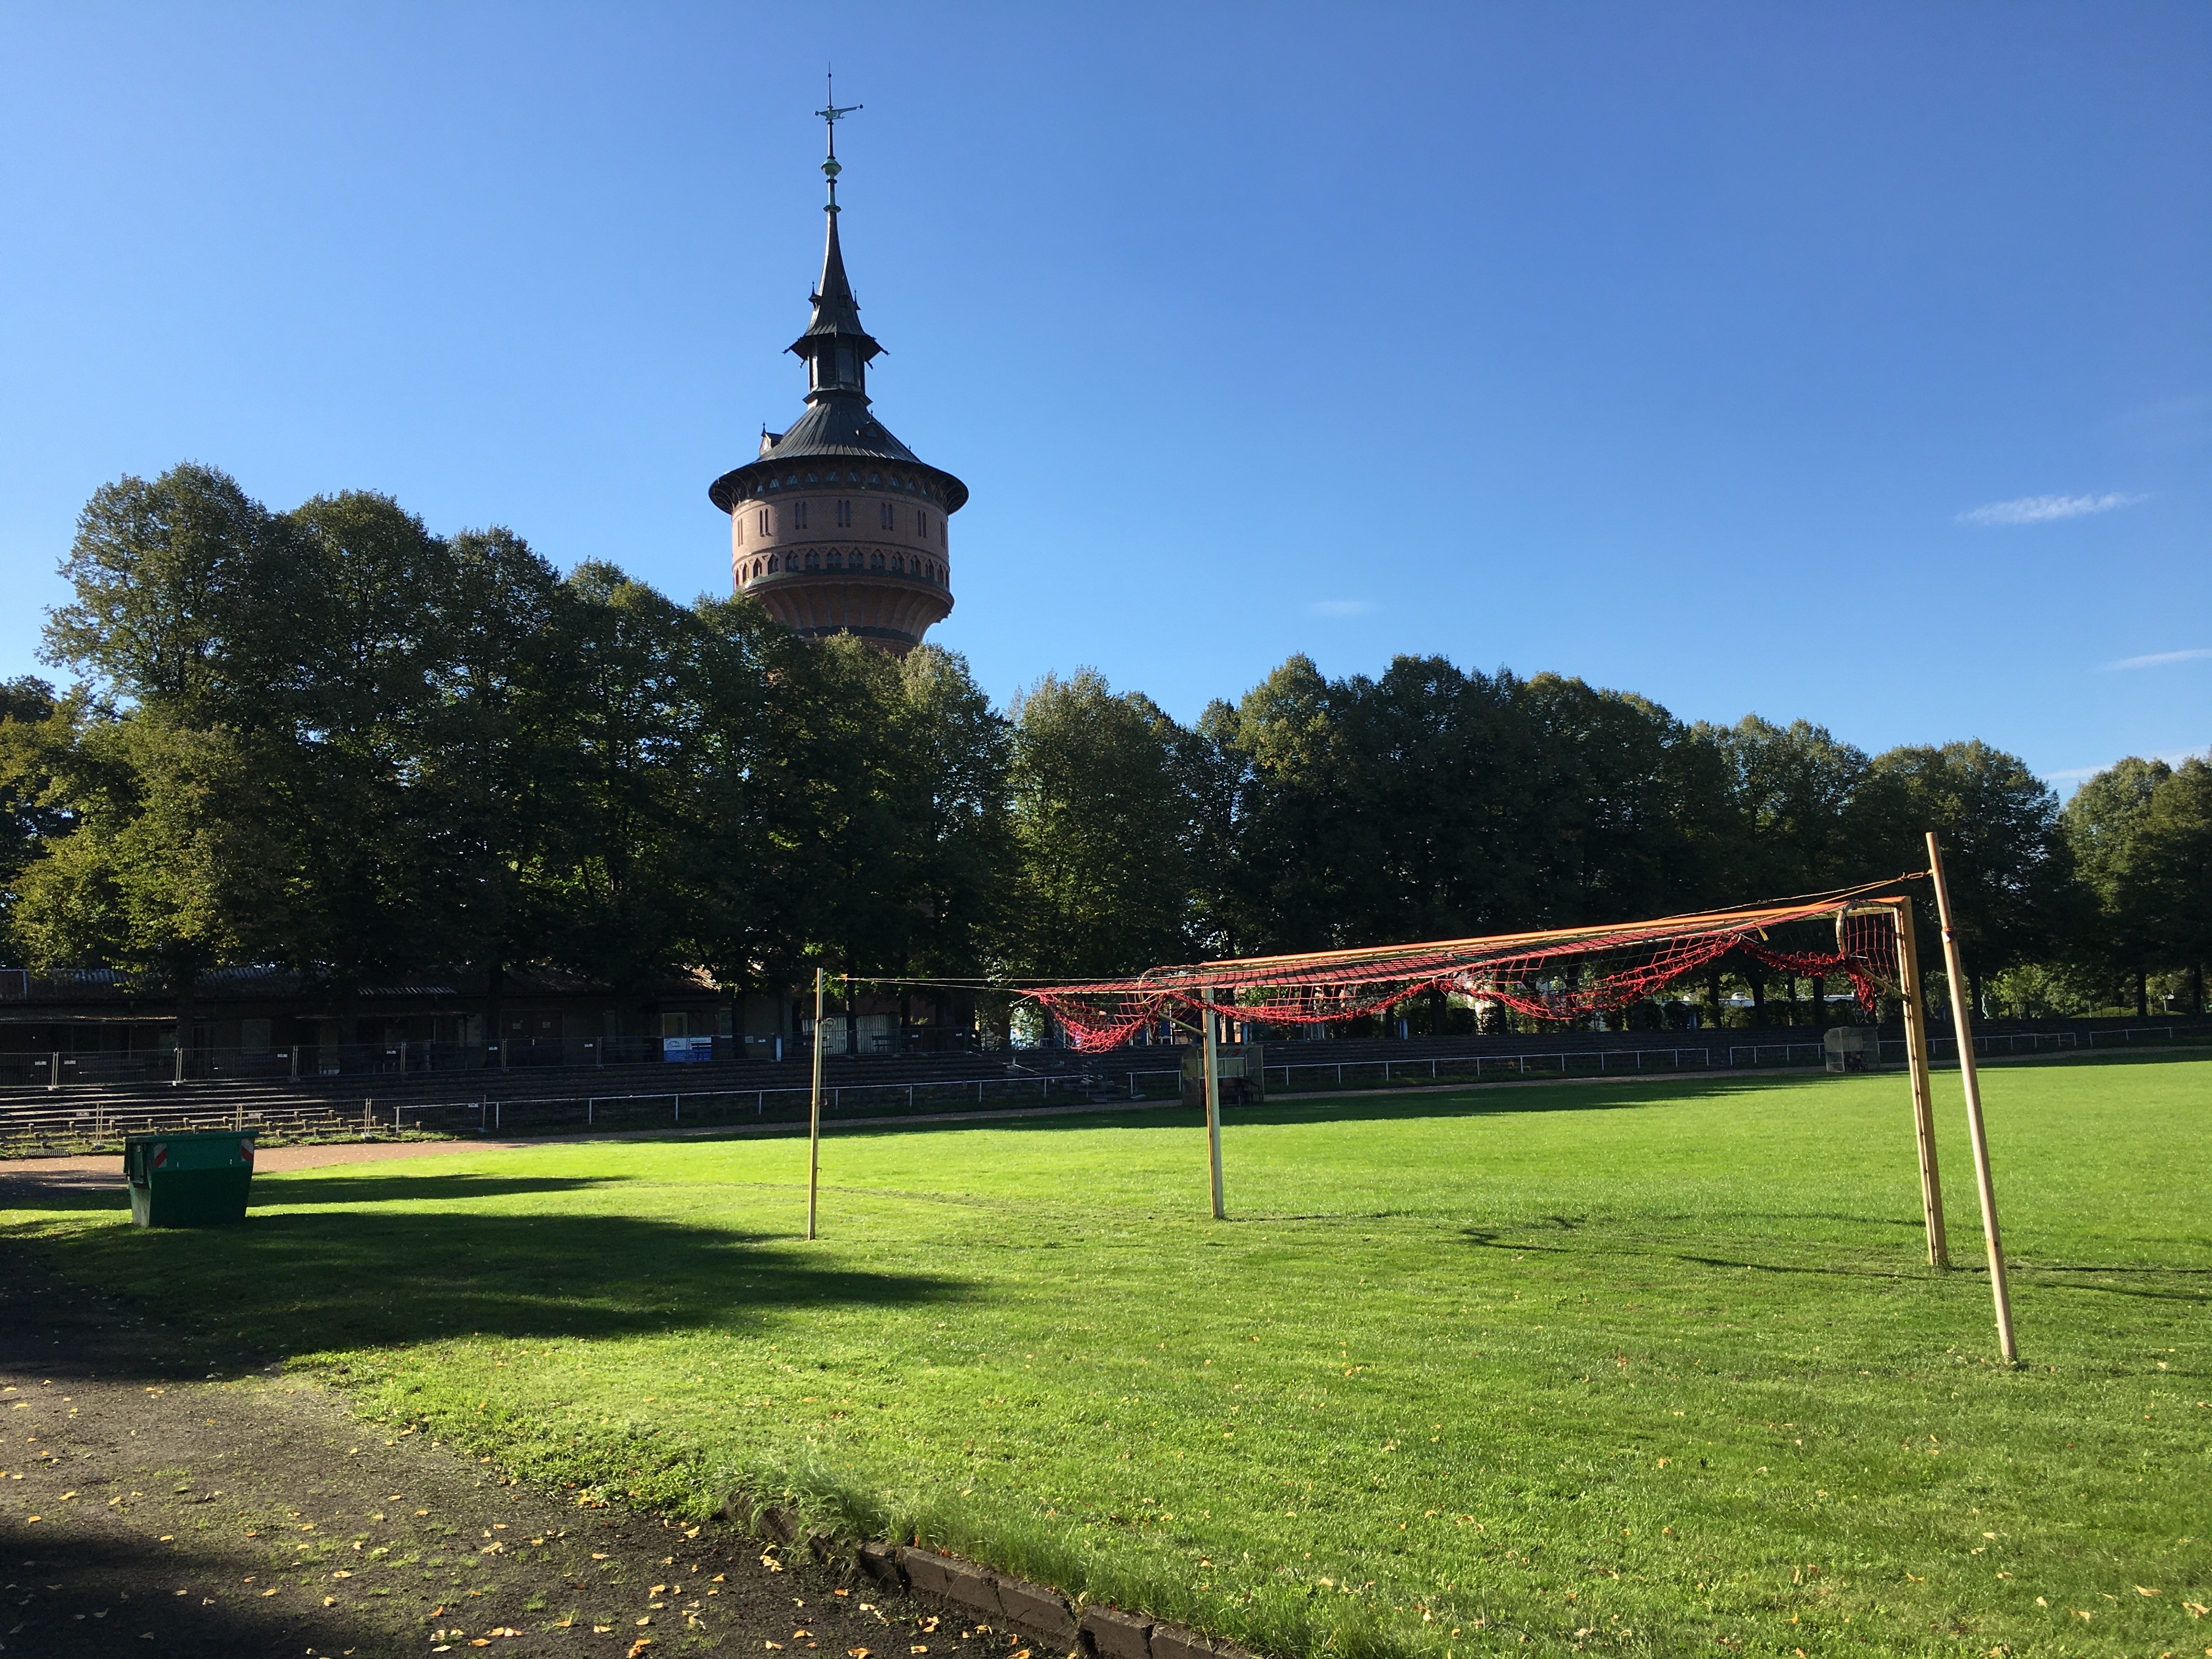 Das Bild zeigt einen Fußballplatz. Im Vordergrund ist ein Tor zu sehen, dessen Netz sehr zerschlissen ist. Im Hintergrund stehen Bäume und ein alter Wasserturm.